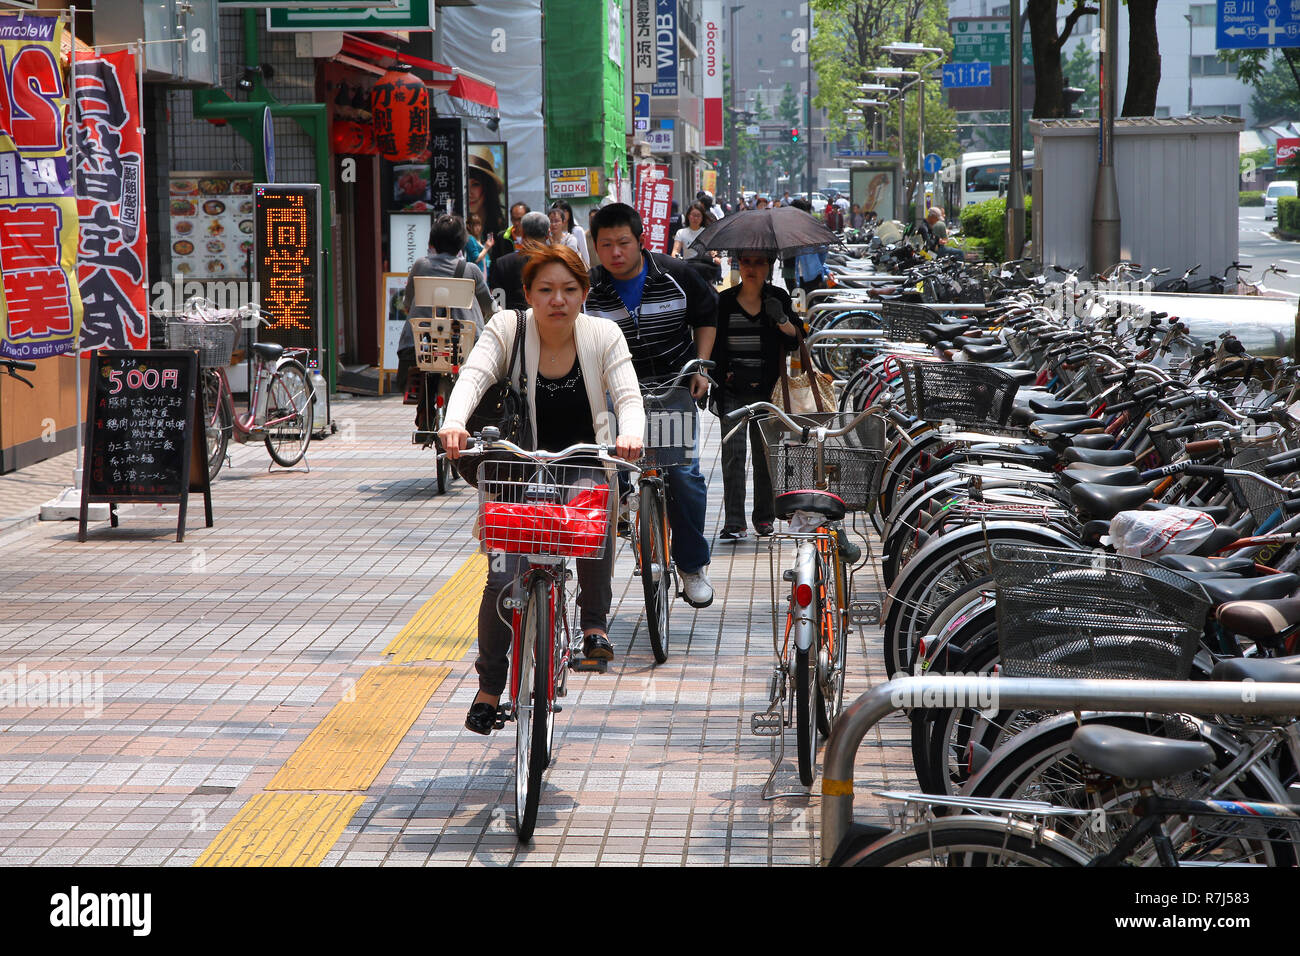 KAWASAKI, Giappone - 10 Maggio: persone in bici il 10 maggio 2012 in Kawasaki, Giappone. La bicicletta è uno dei più popolari modi di trasporto in Kawasaki, città in Foto Stock